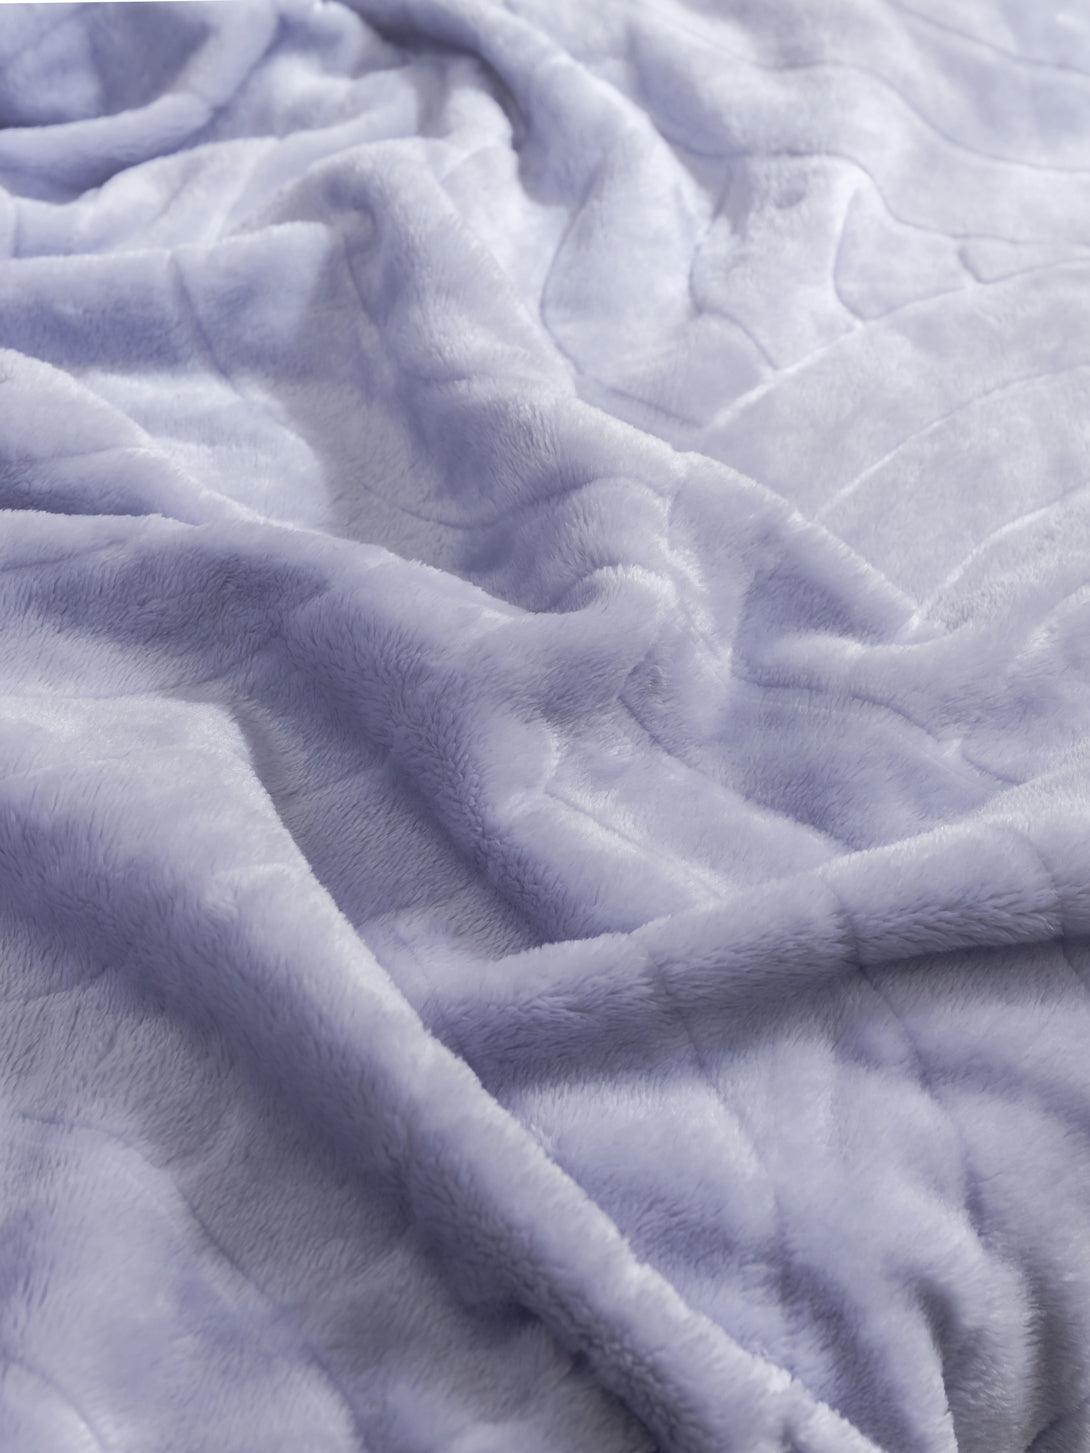 Flannel Fleece Blanket-Lavender Purple